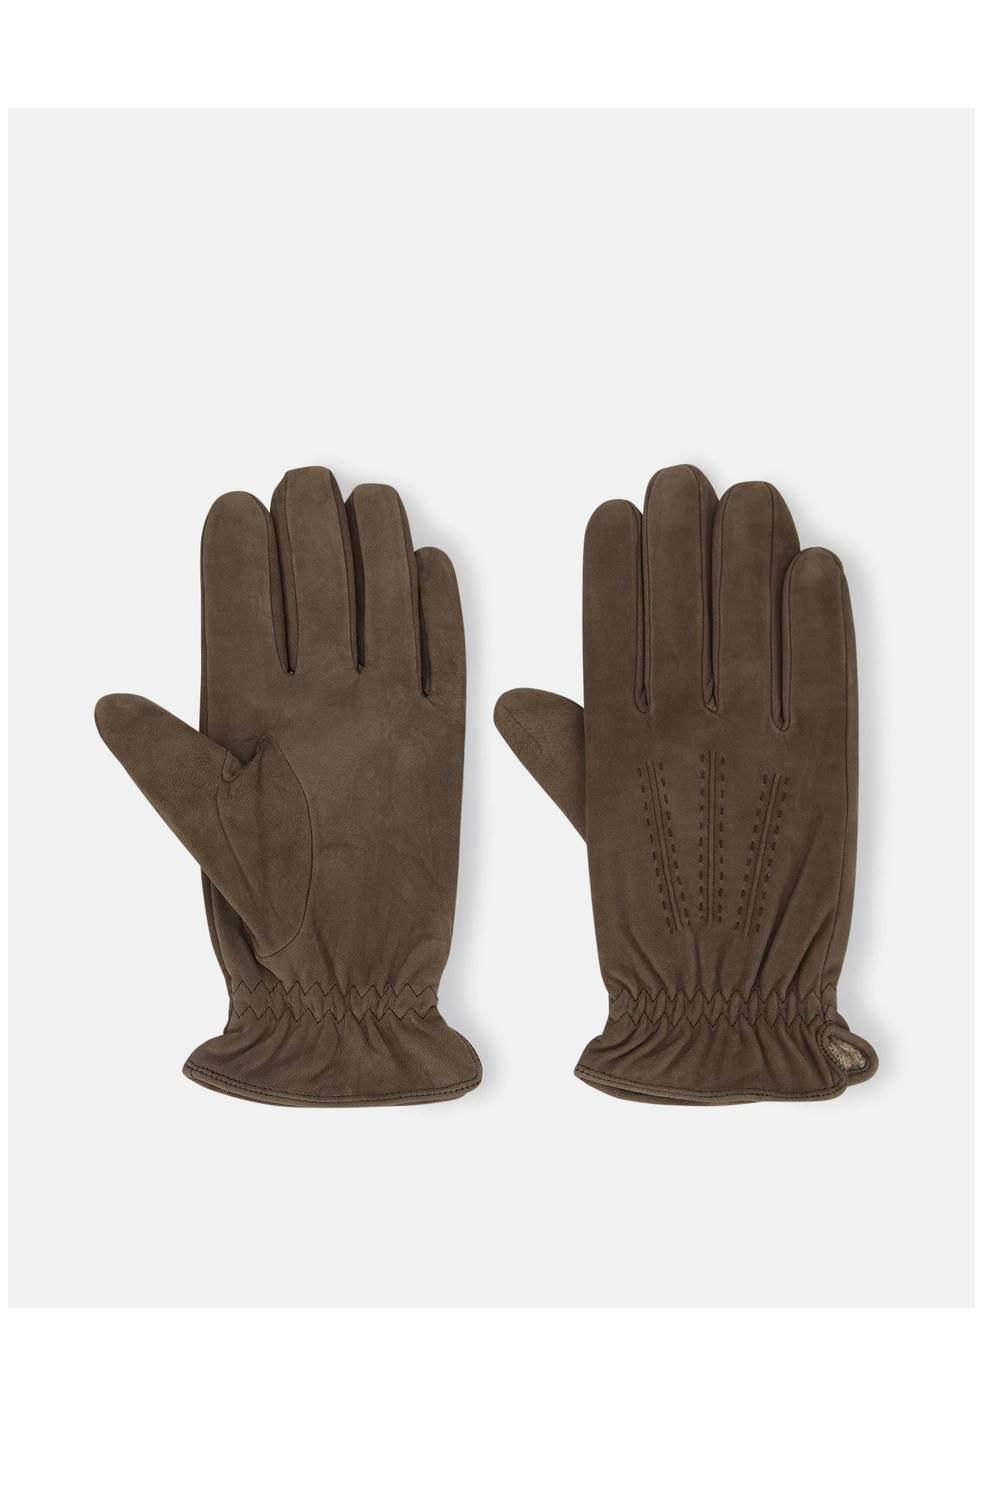 Regalos para Navidad para hombre: guantes de ante